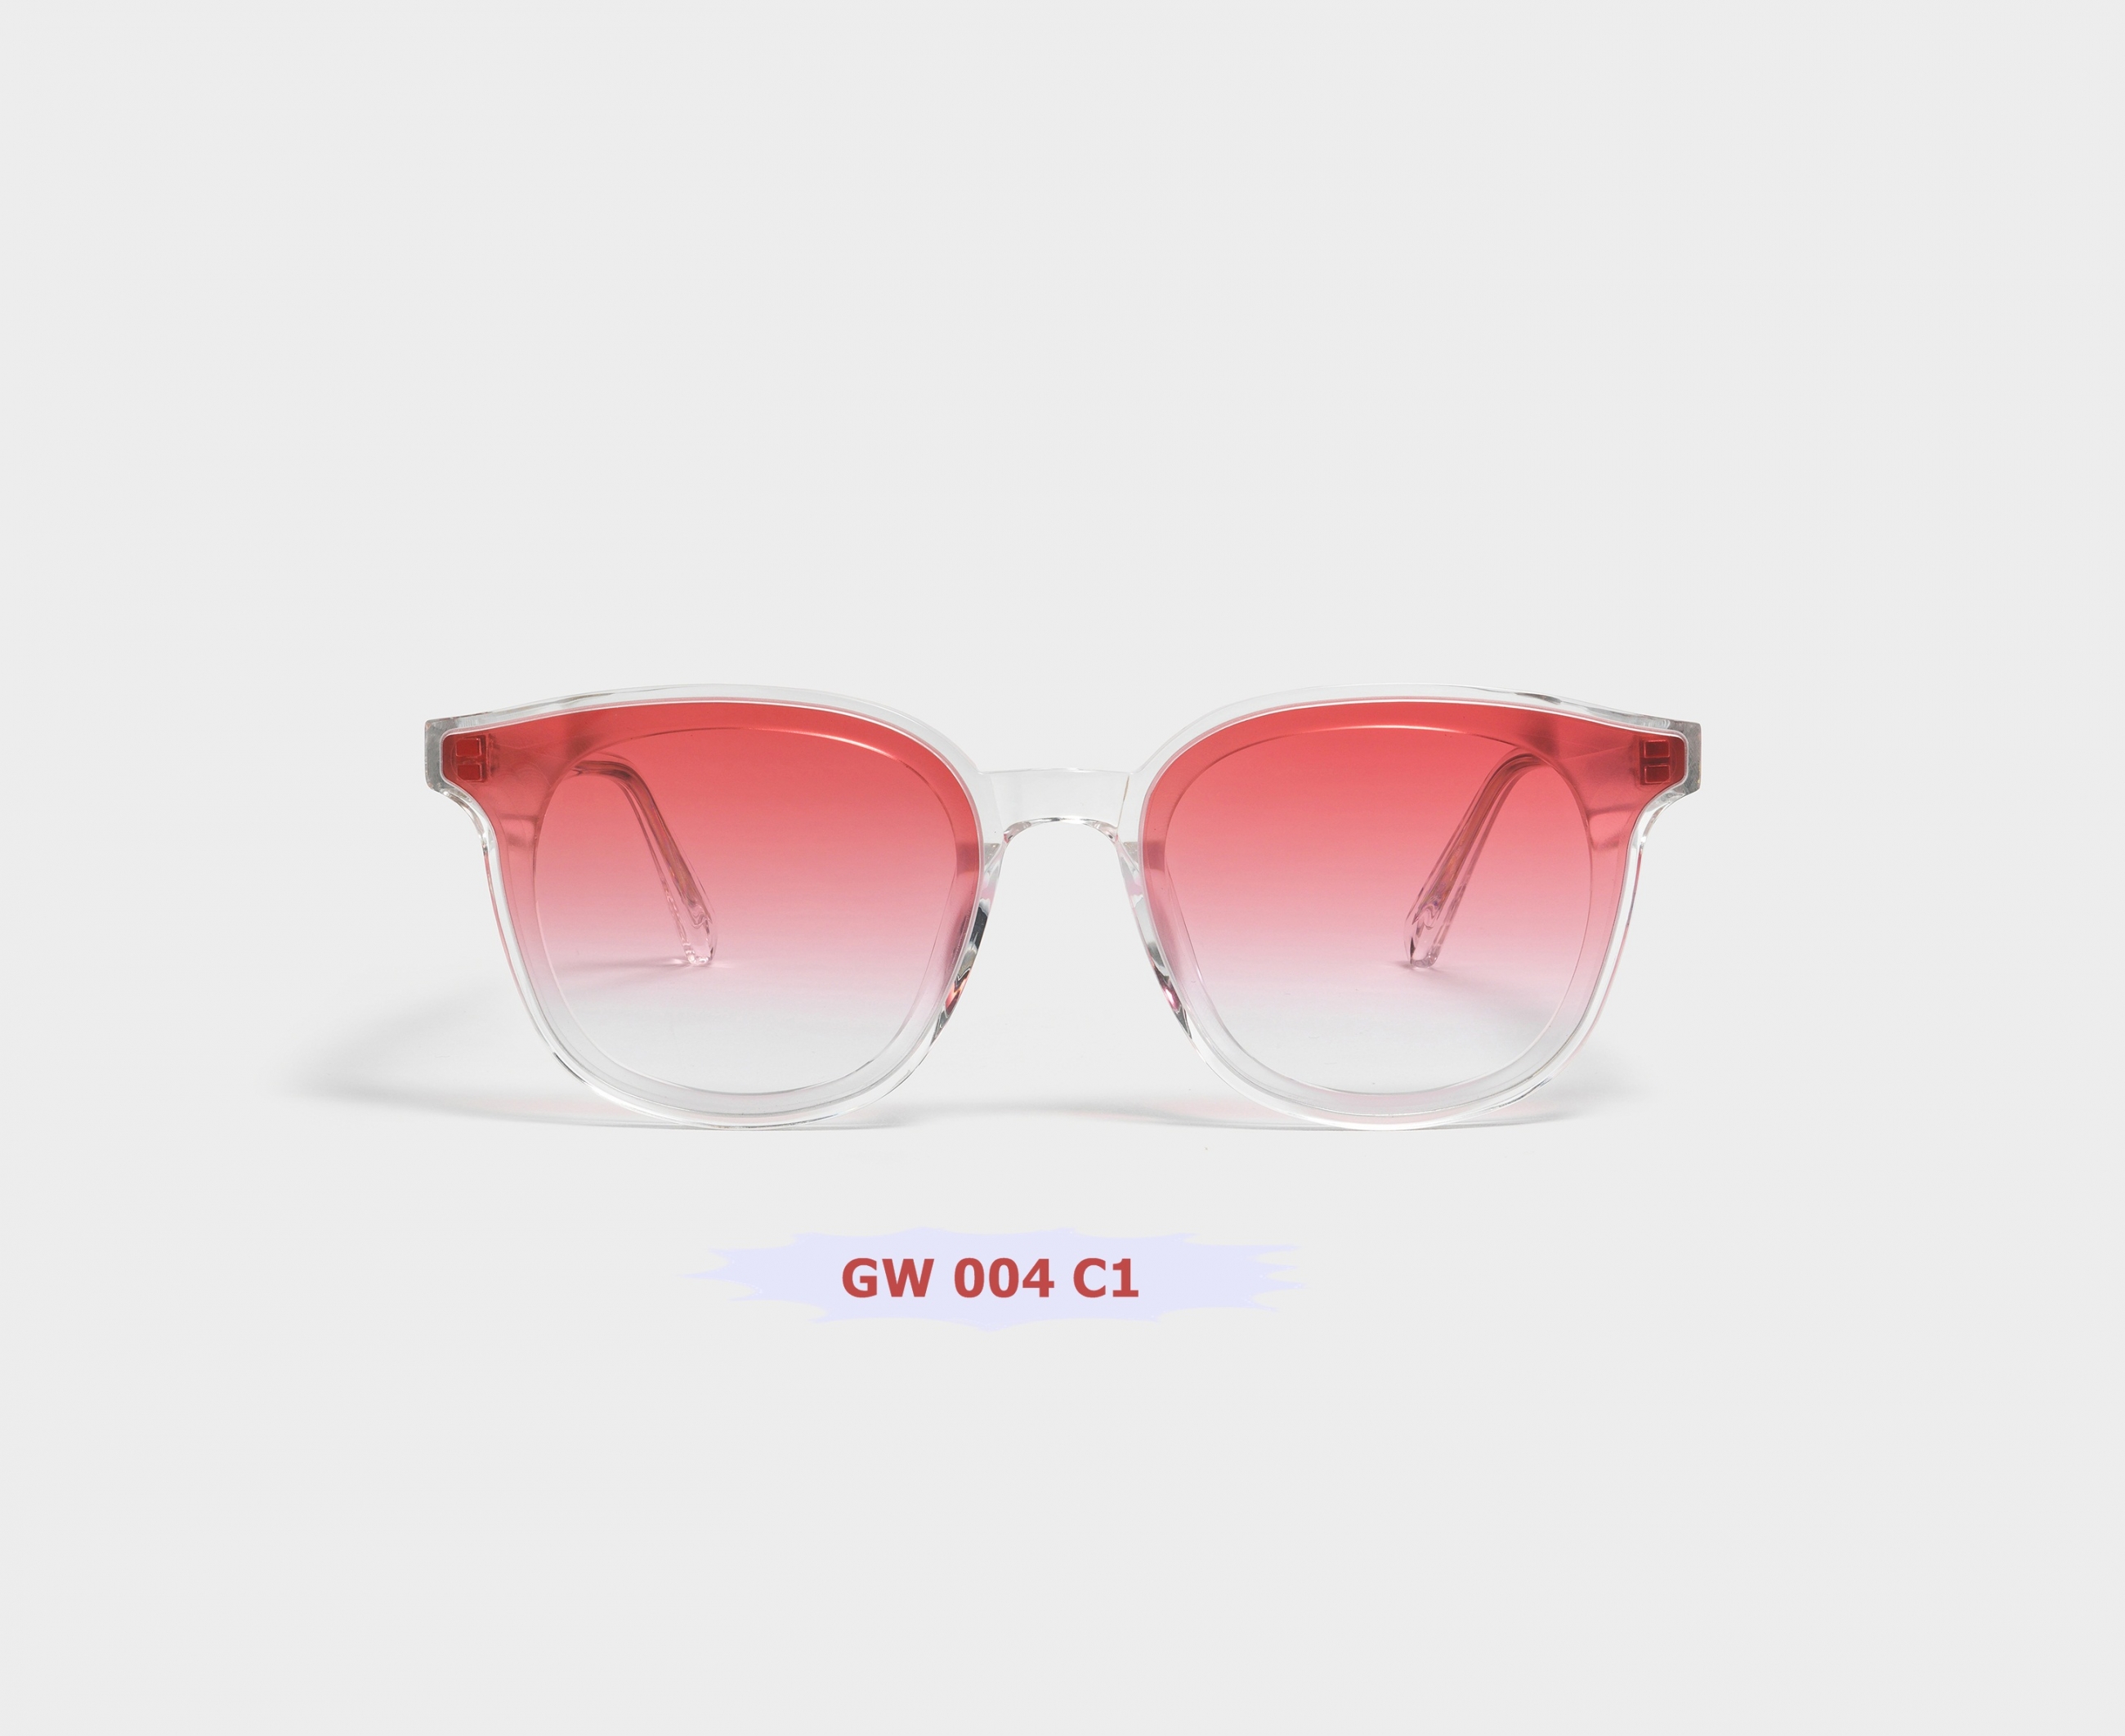 GW 004 C1 - KÍNH GENTLE MONSTER CHÍNH HÃNG